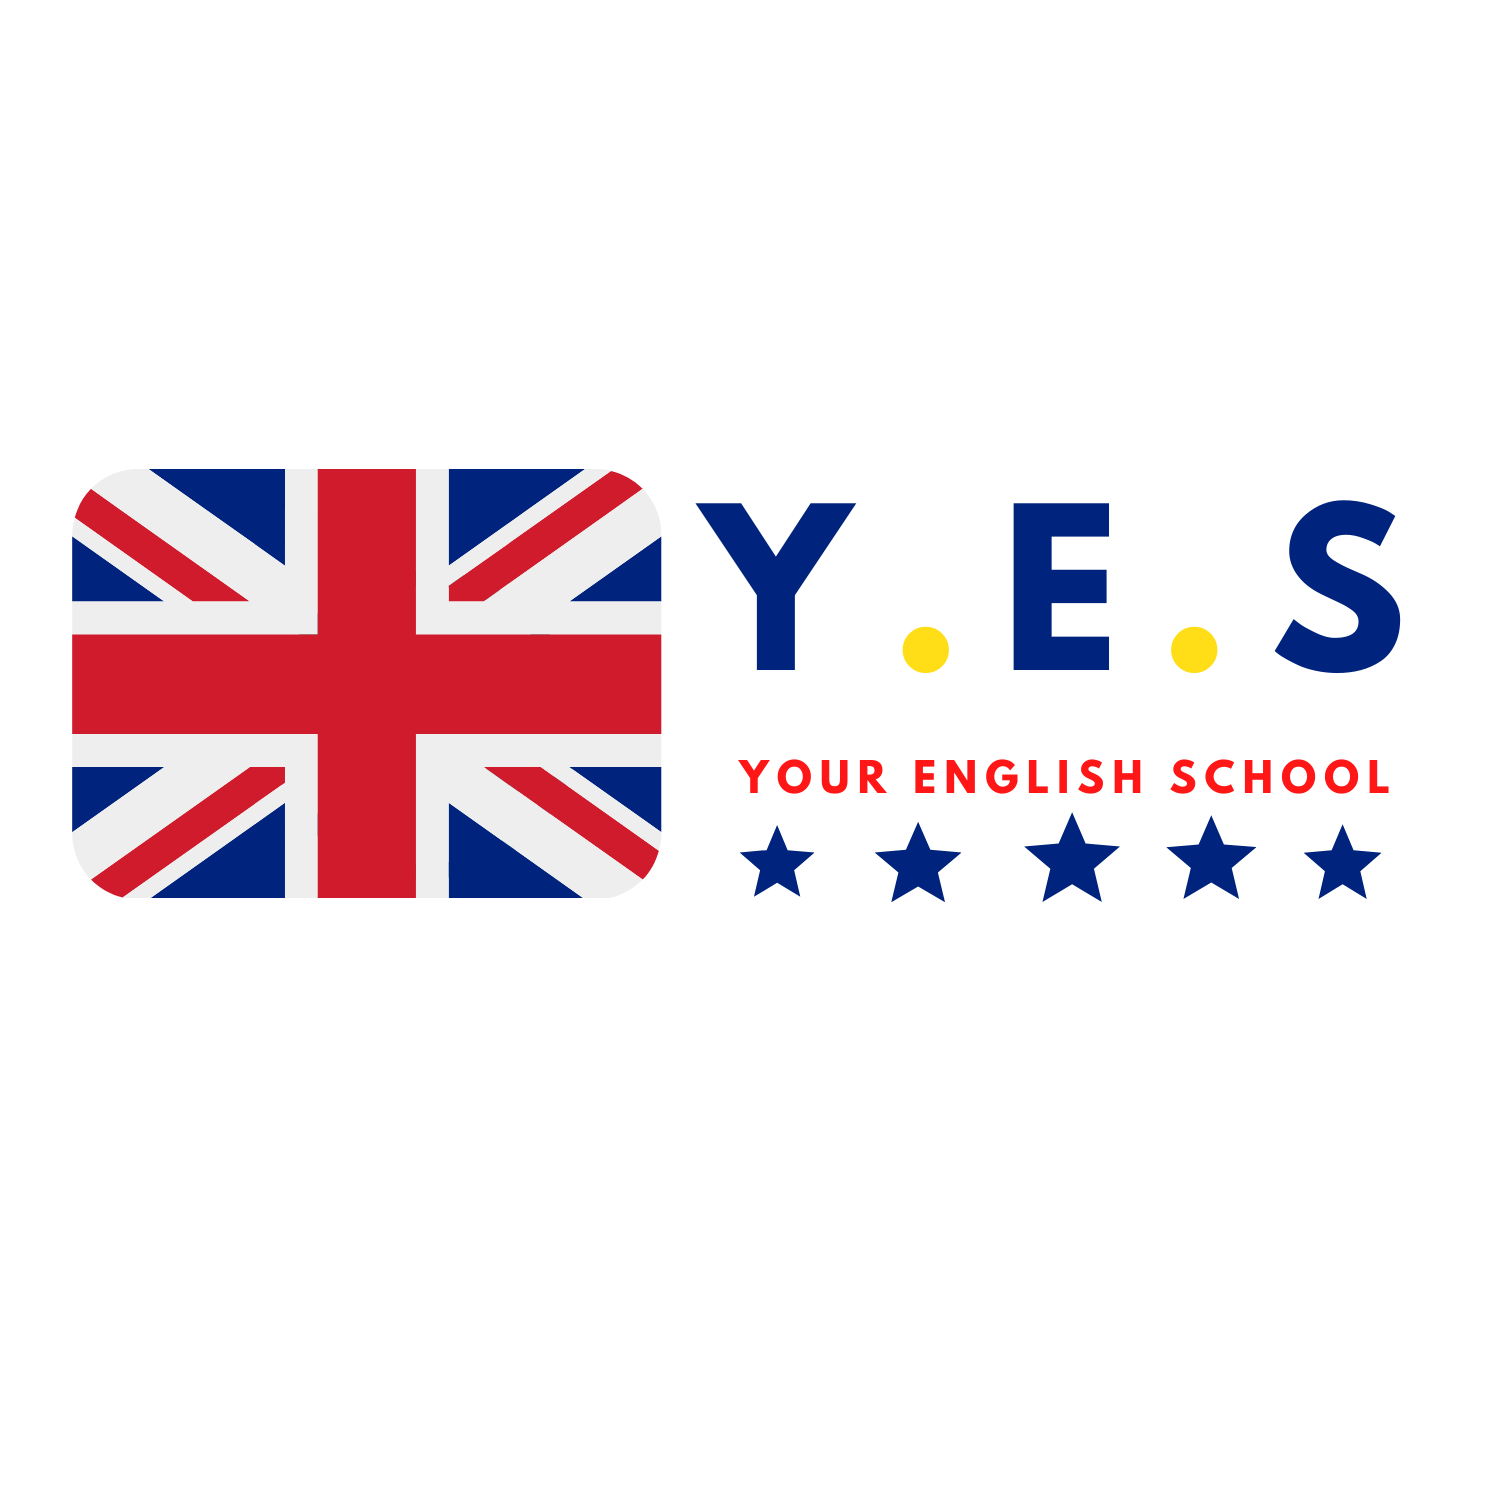 Y.E.S. Your English School